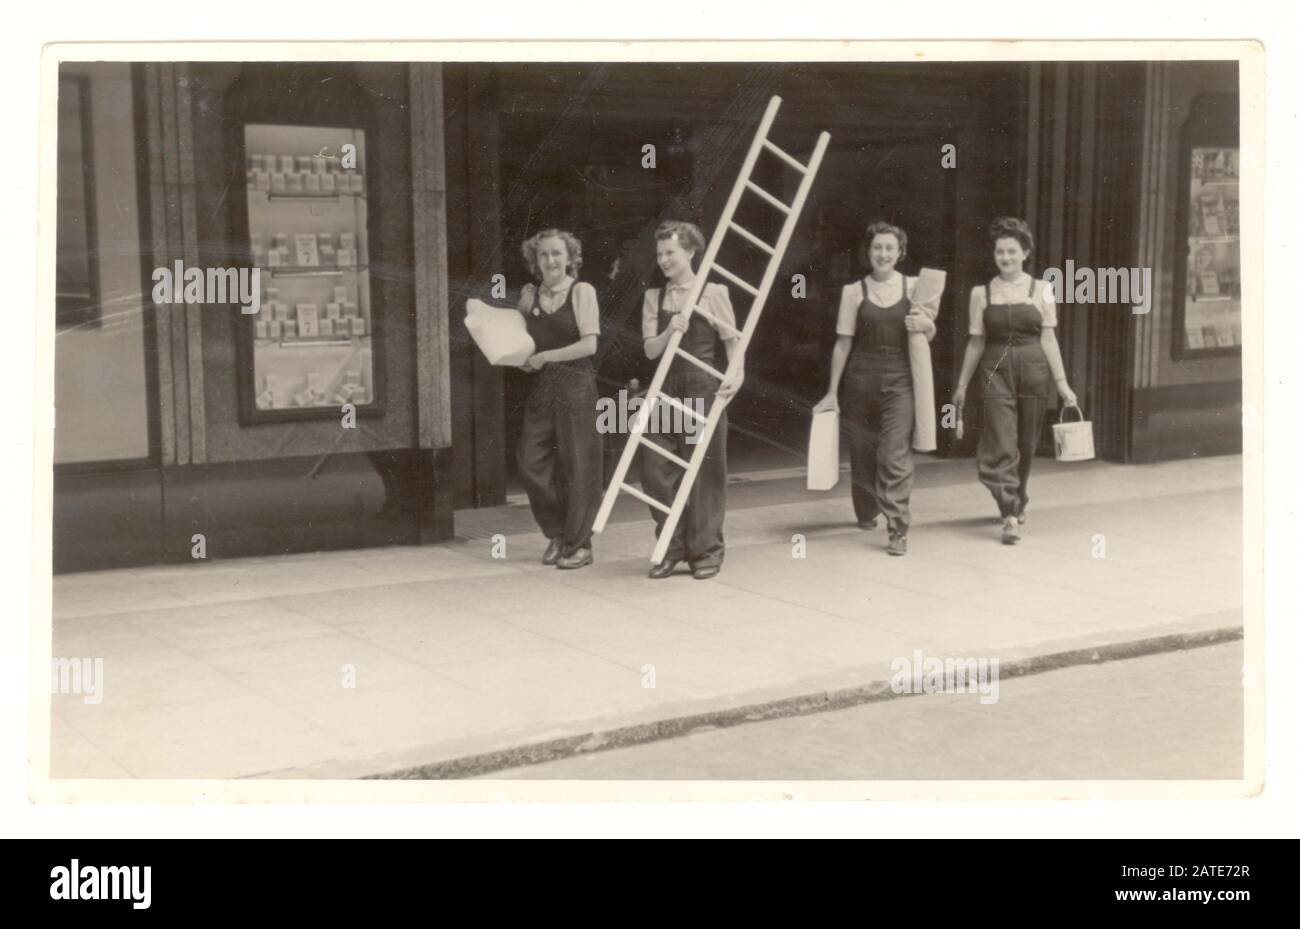 WW2-Ära Foto von Damen Mitarbeitern, Schaufensterpuppen im Kaufhaus mit Latzhose mit Lack, Stoff und einer Schaufensterpuppe, die durch den Ladeneingang geht, vom Jahr 1942, Großbritannien Stockfoto